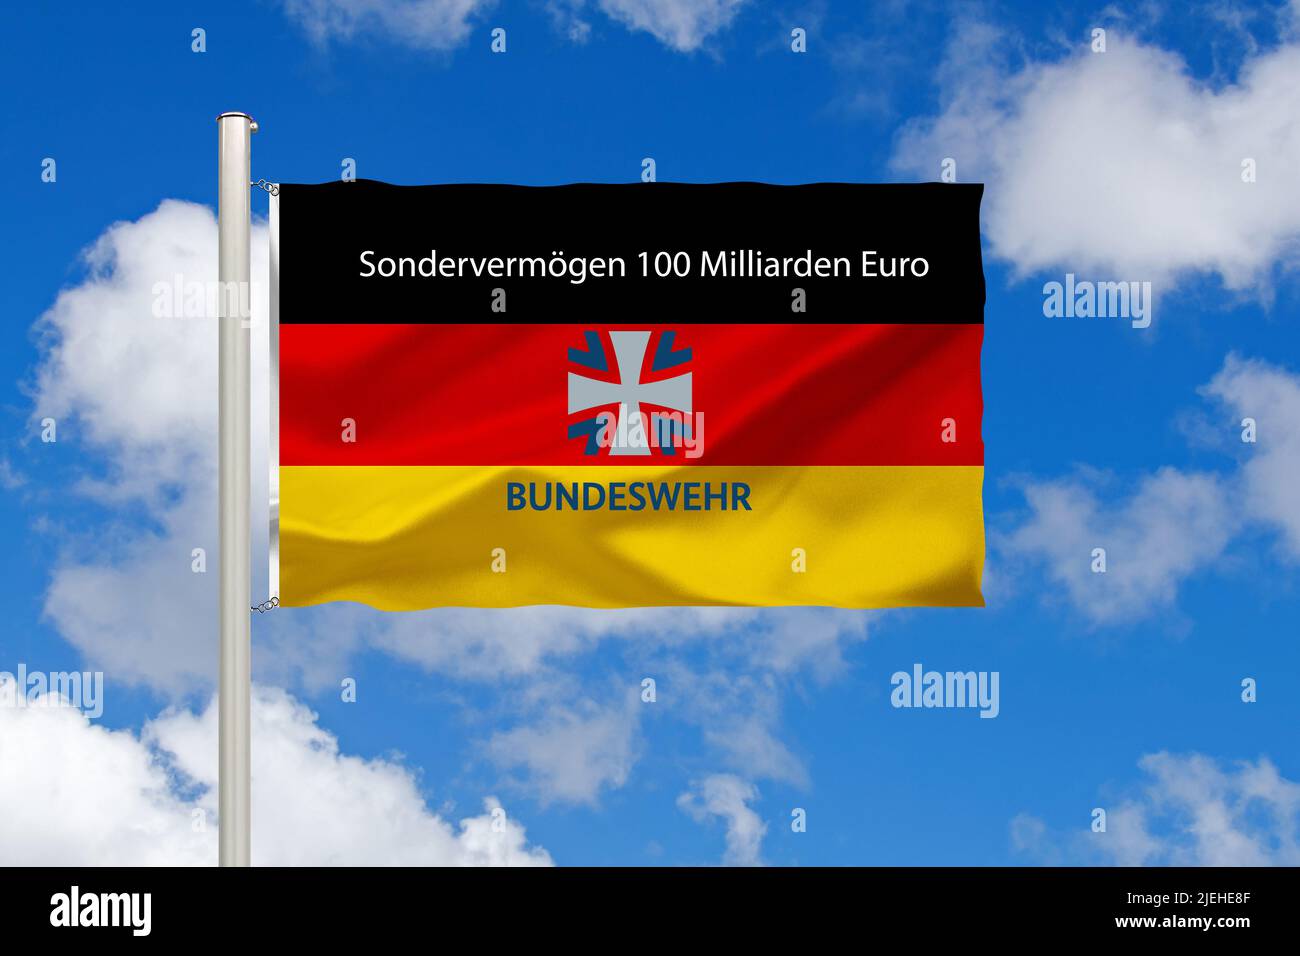 https://c8.alamy.com/compfr/2jehe8f/europe-ue-bundesrepublik-deutschland-flagge-nationalflagge-fahne-nationalfahne-cumulus-wolken-vor-blauen-himmel-sondervermogen-fur-die-bundesw-2jehe8f.jpg